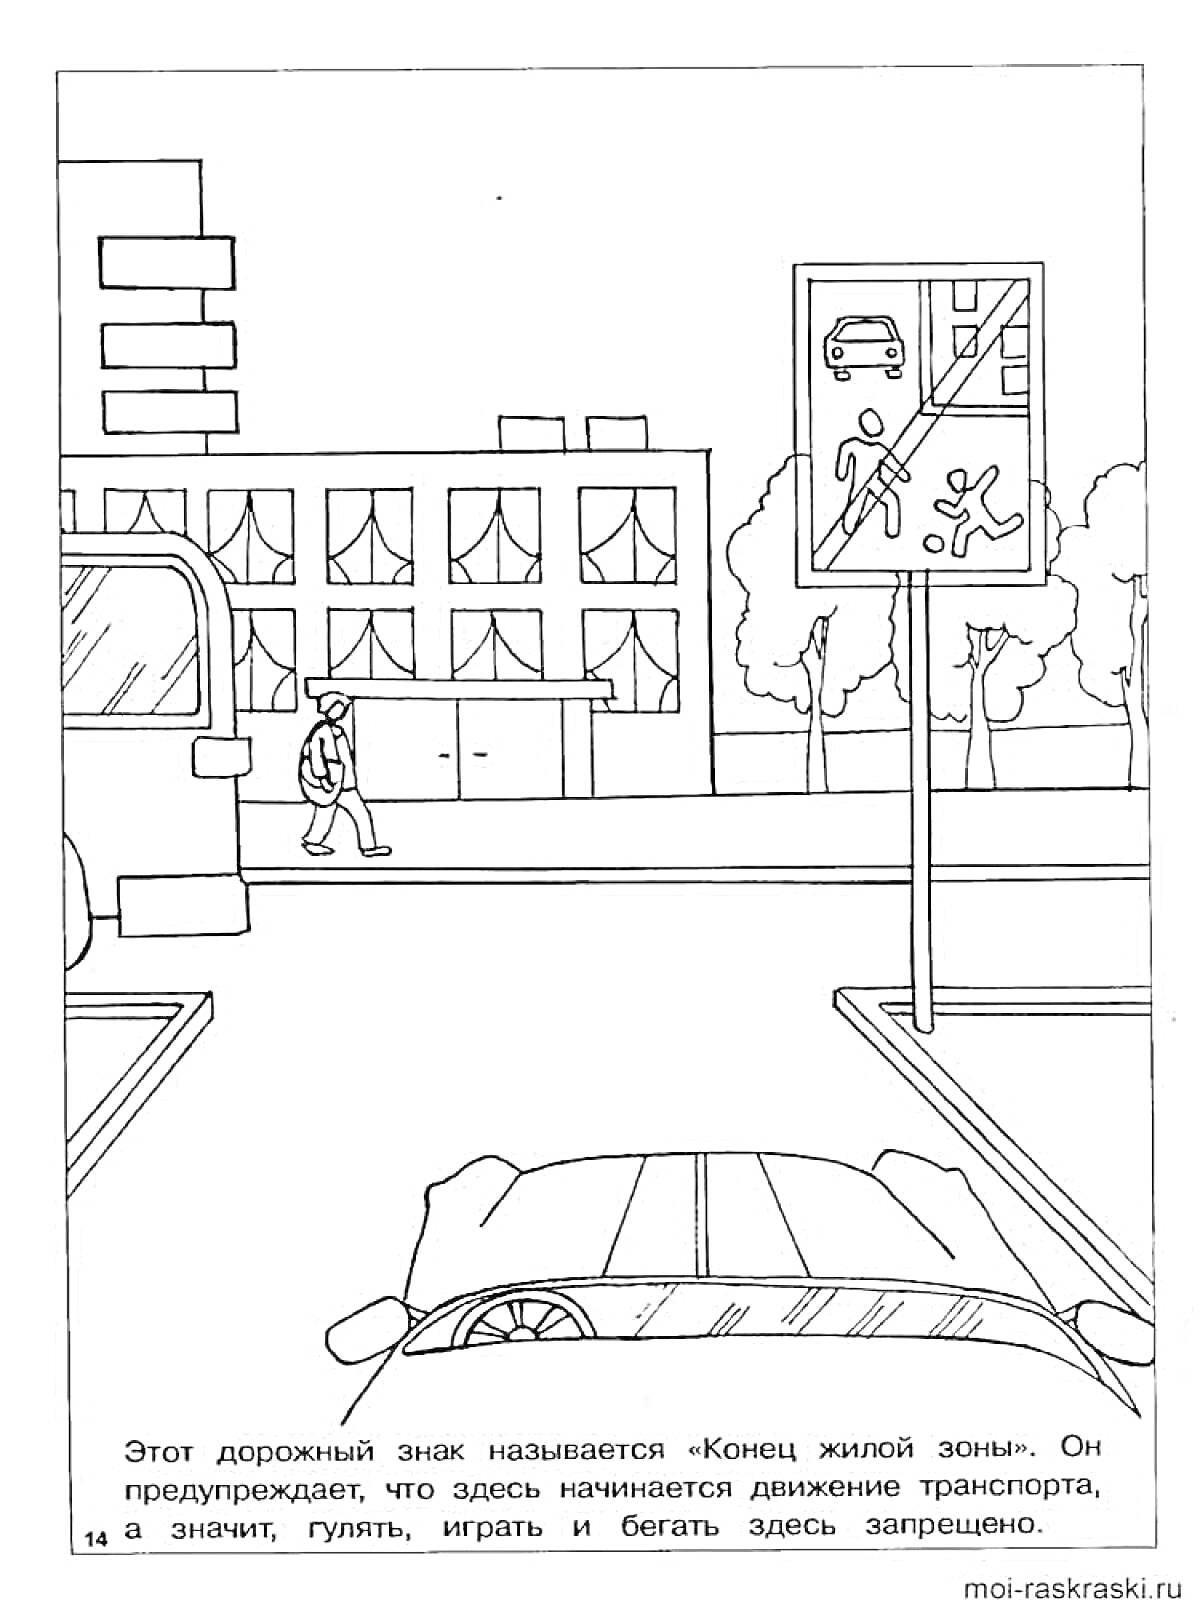 На раскраске изображено: Дорожные знаки, Перекресток, Автобус, Здания, Деревья, Предупреждение, Транспорт, Безопасность, Авто, Пешеходы